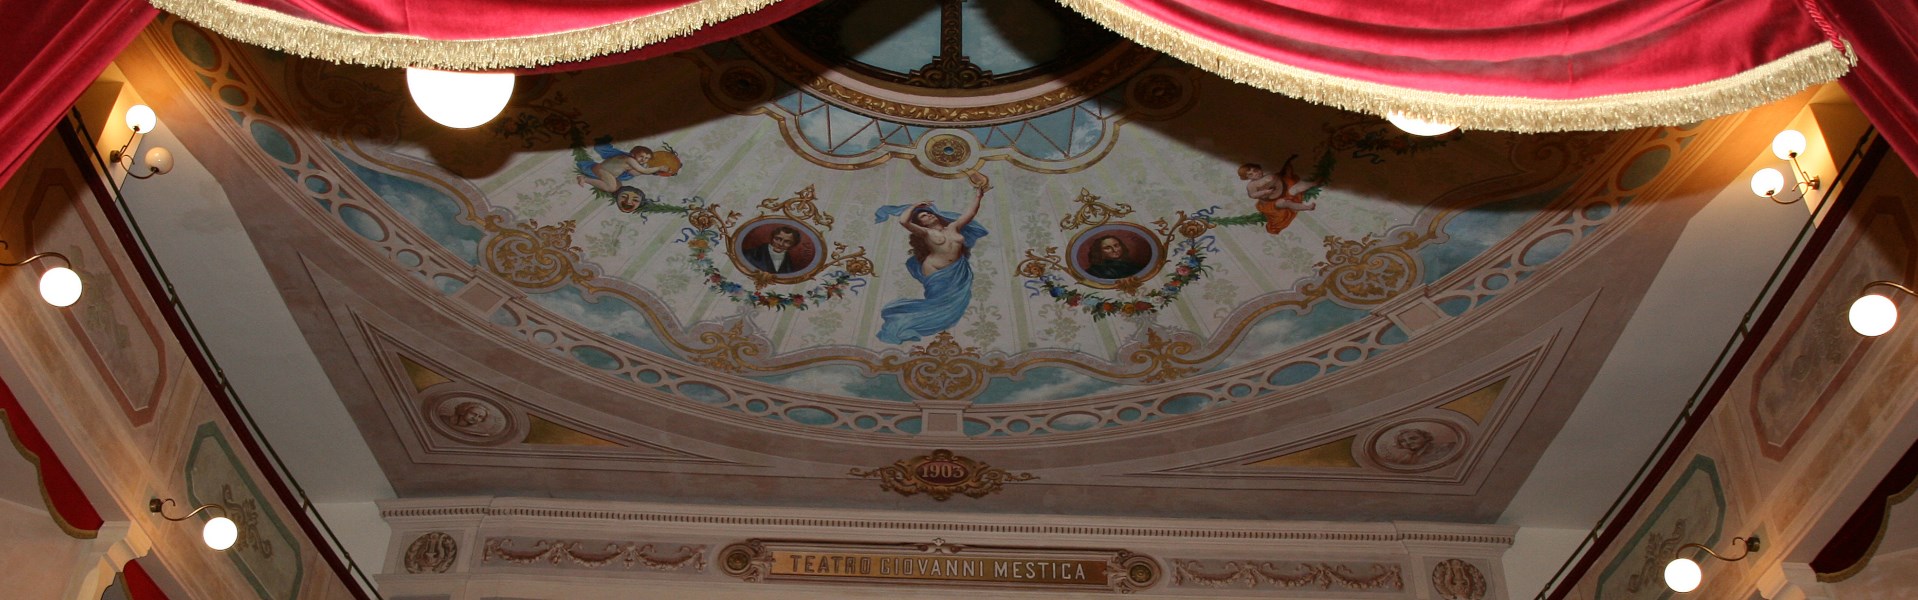 Apiro - Teatro Giovanni Mestica